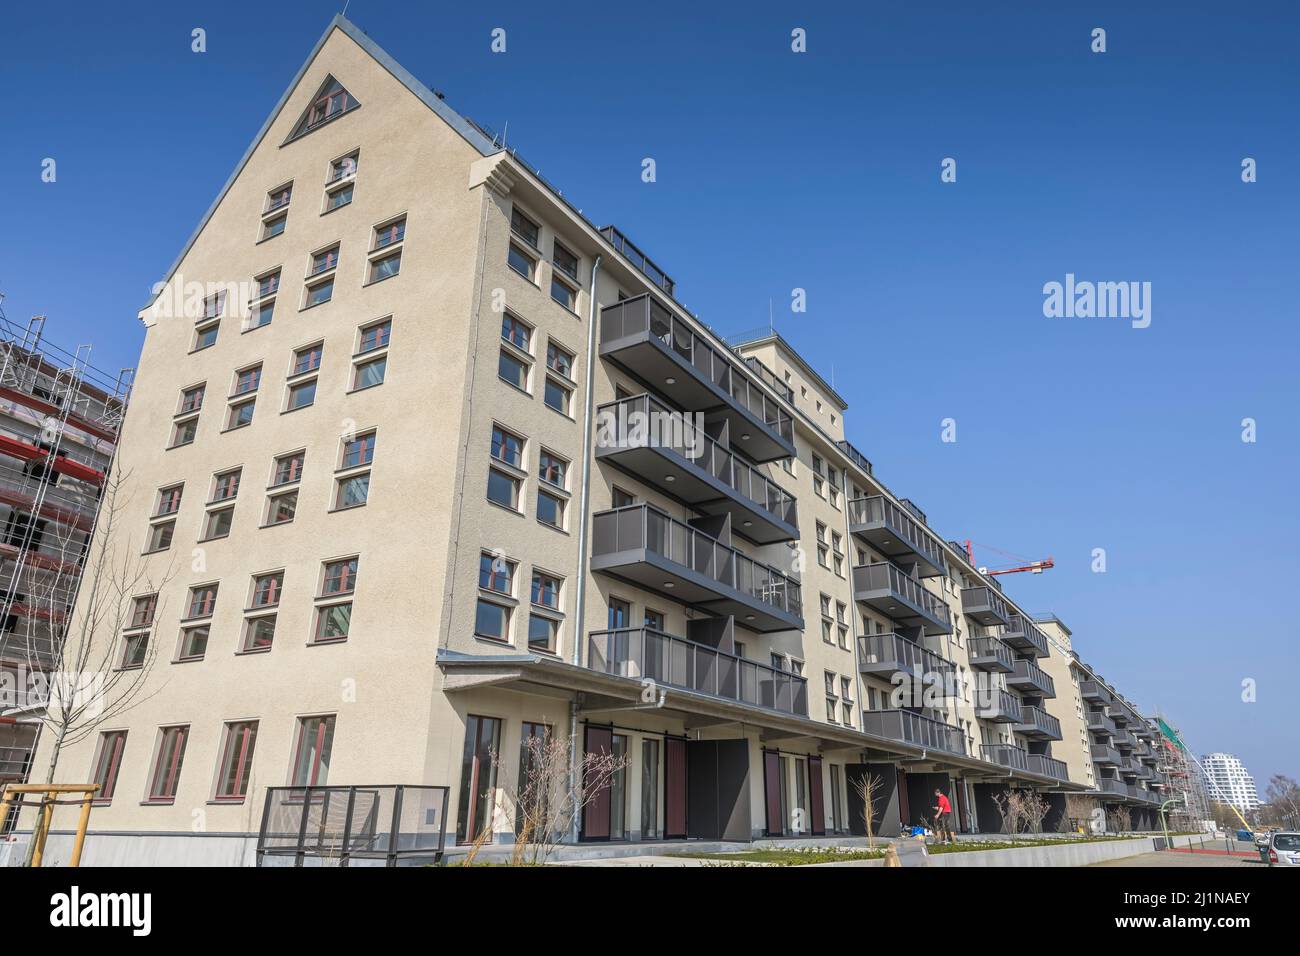 Umbau von Speicherhäusern zu Eigentumswohnungen, Buwog Speicherballett, Parkstraße, Hakenfelde, Spandau, Berlin, Deutschland Stock Photo